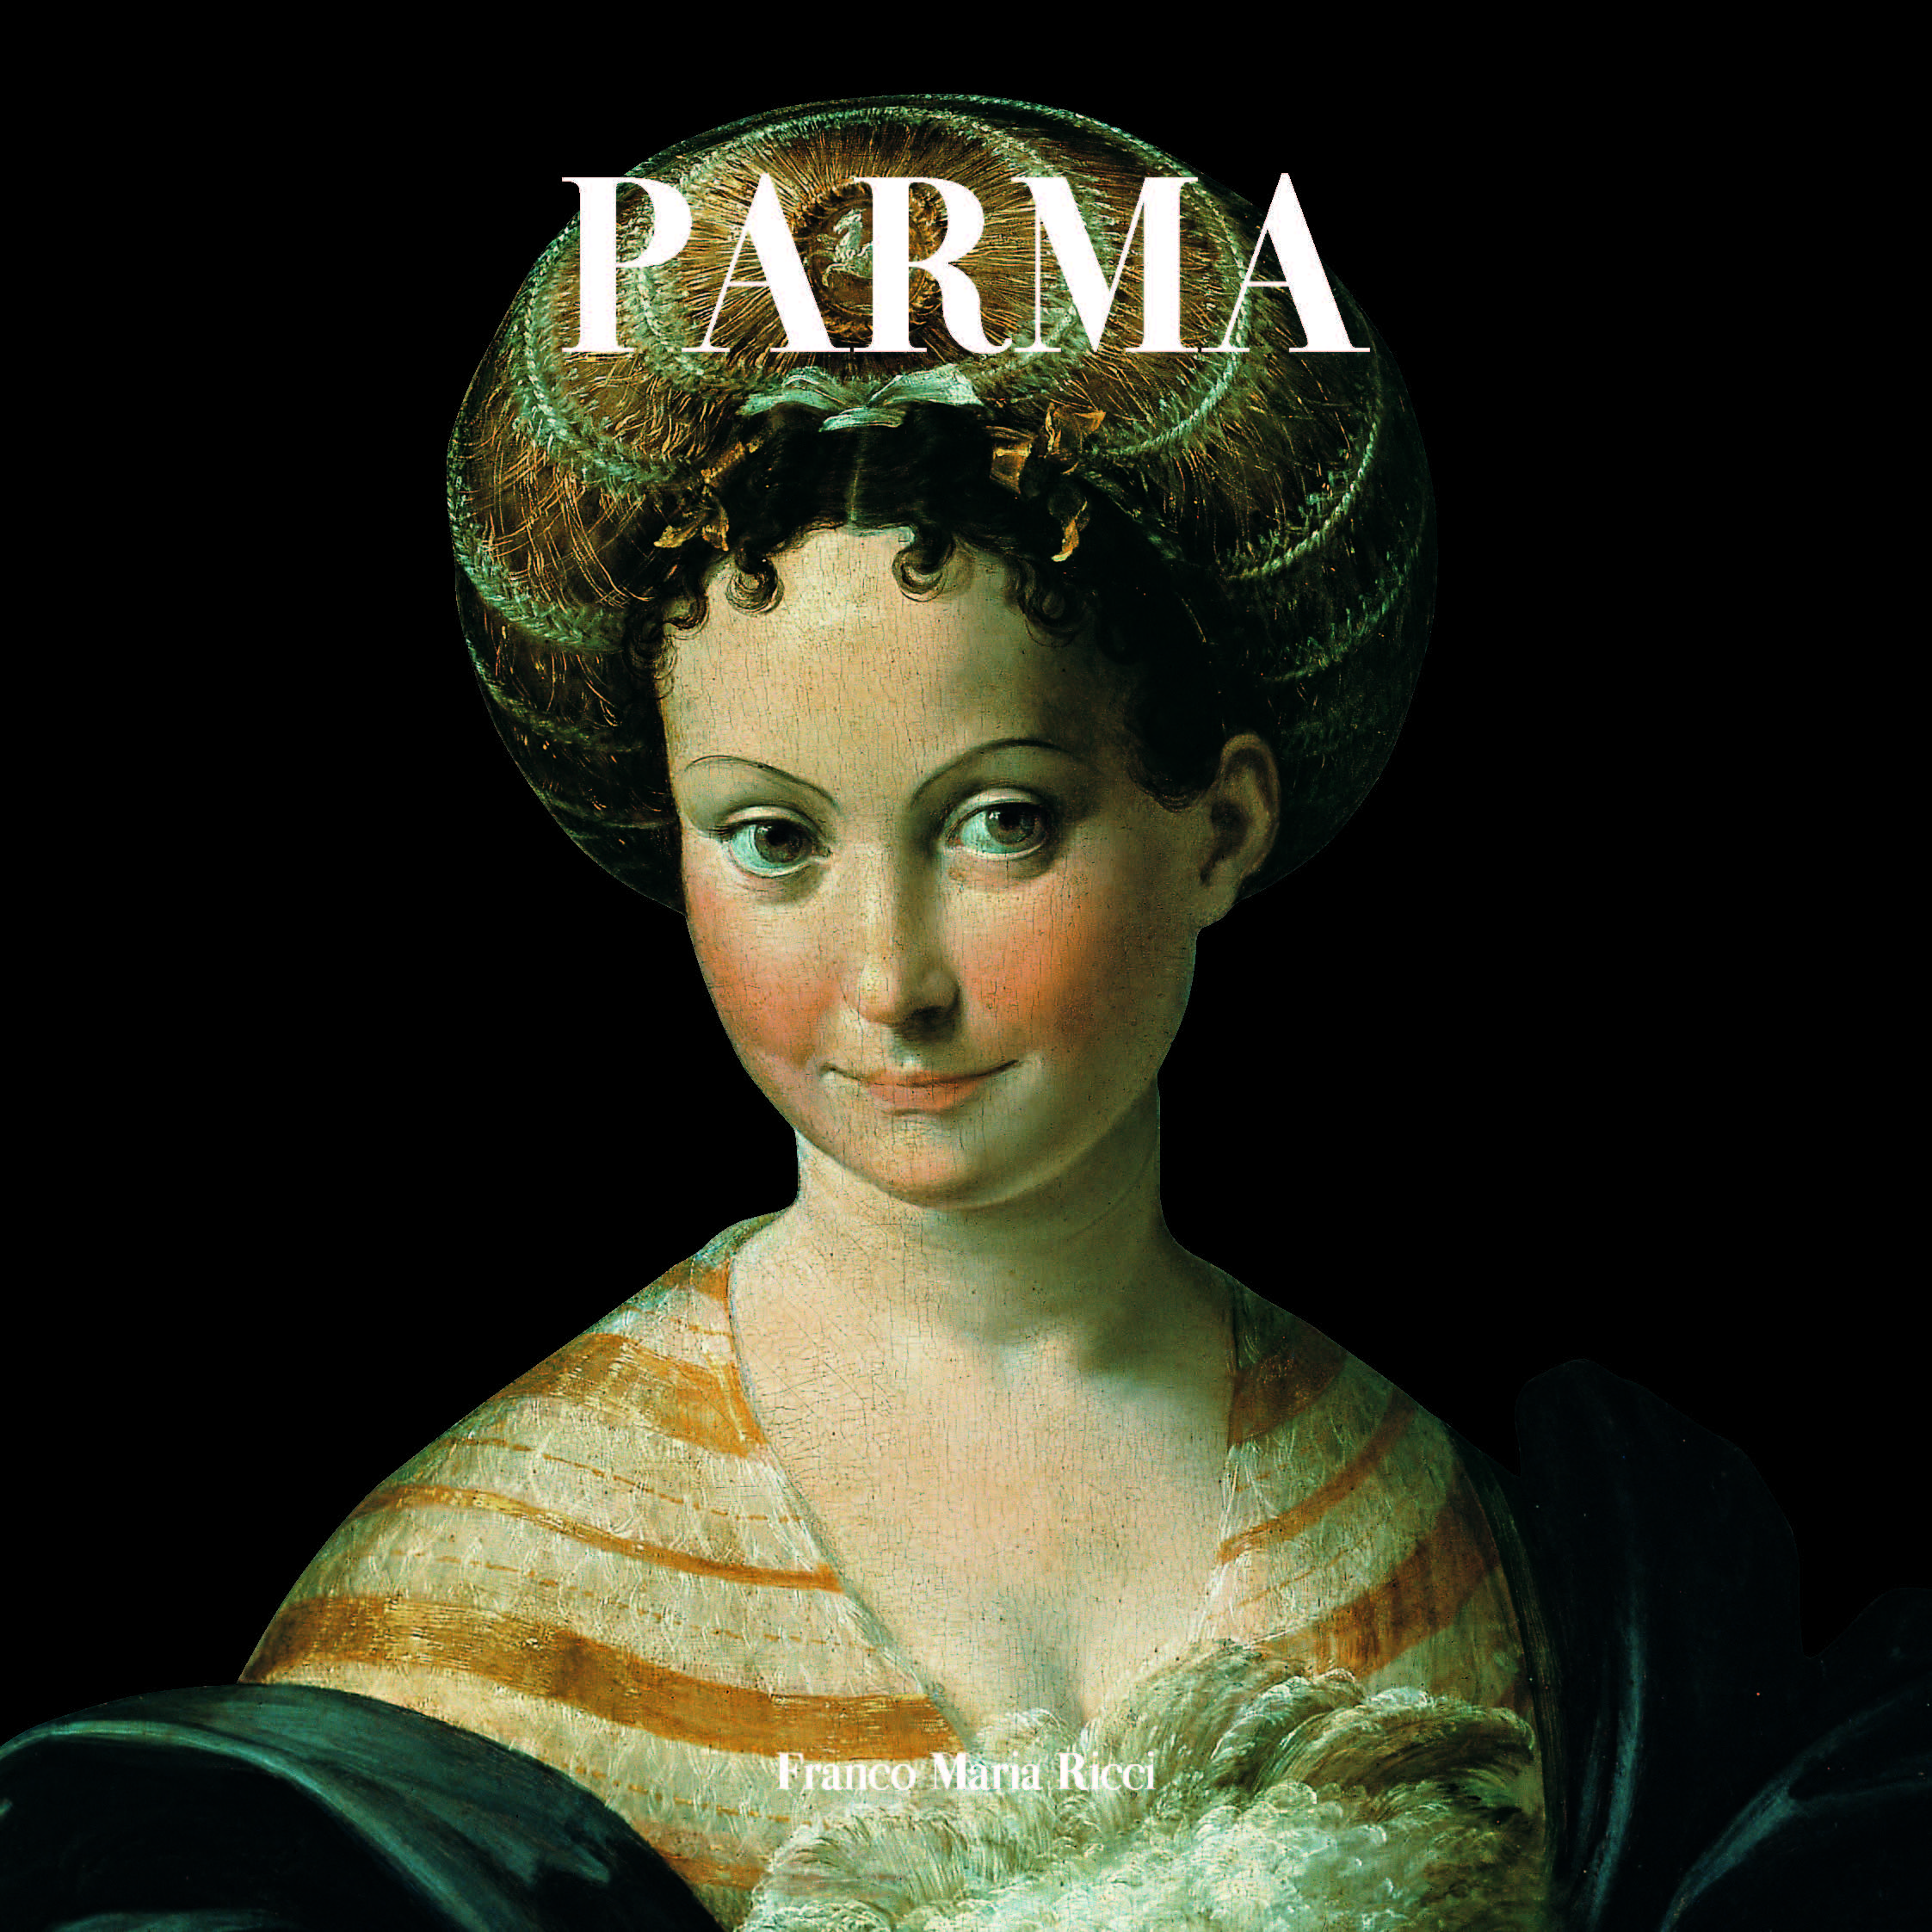 PARMA: la copertina del volume Parma, pubblicato nel 2020 